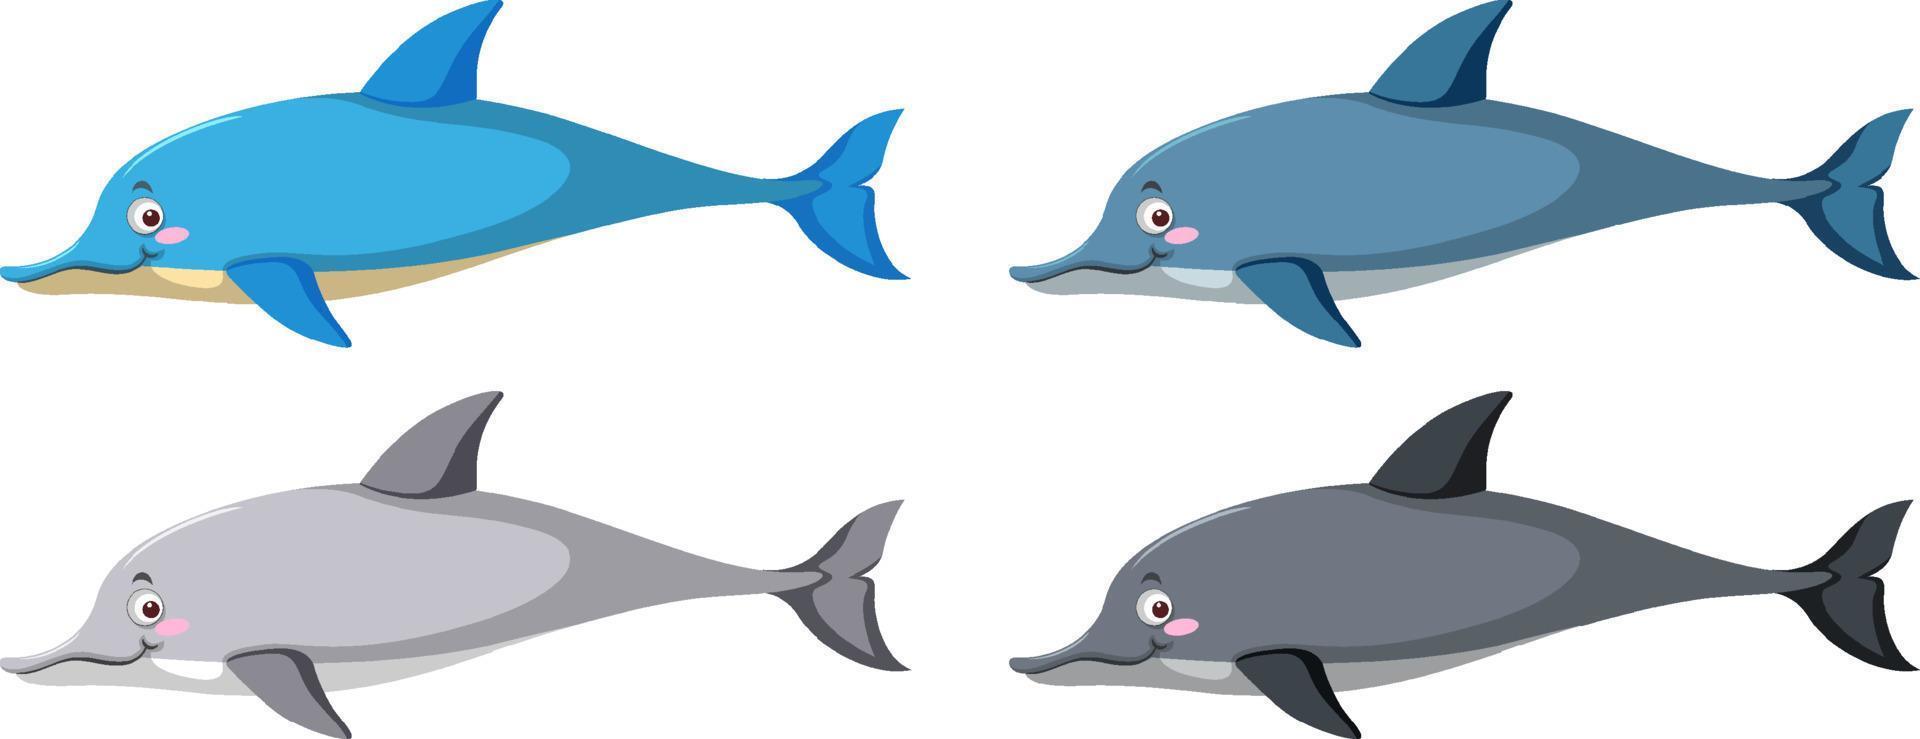 conjunto de golfinhos diferentes em estilo cartoon vetor